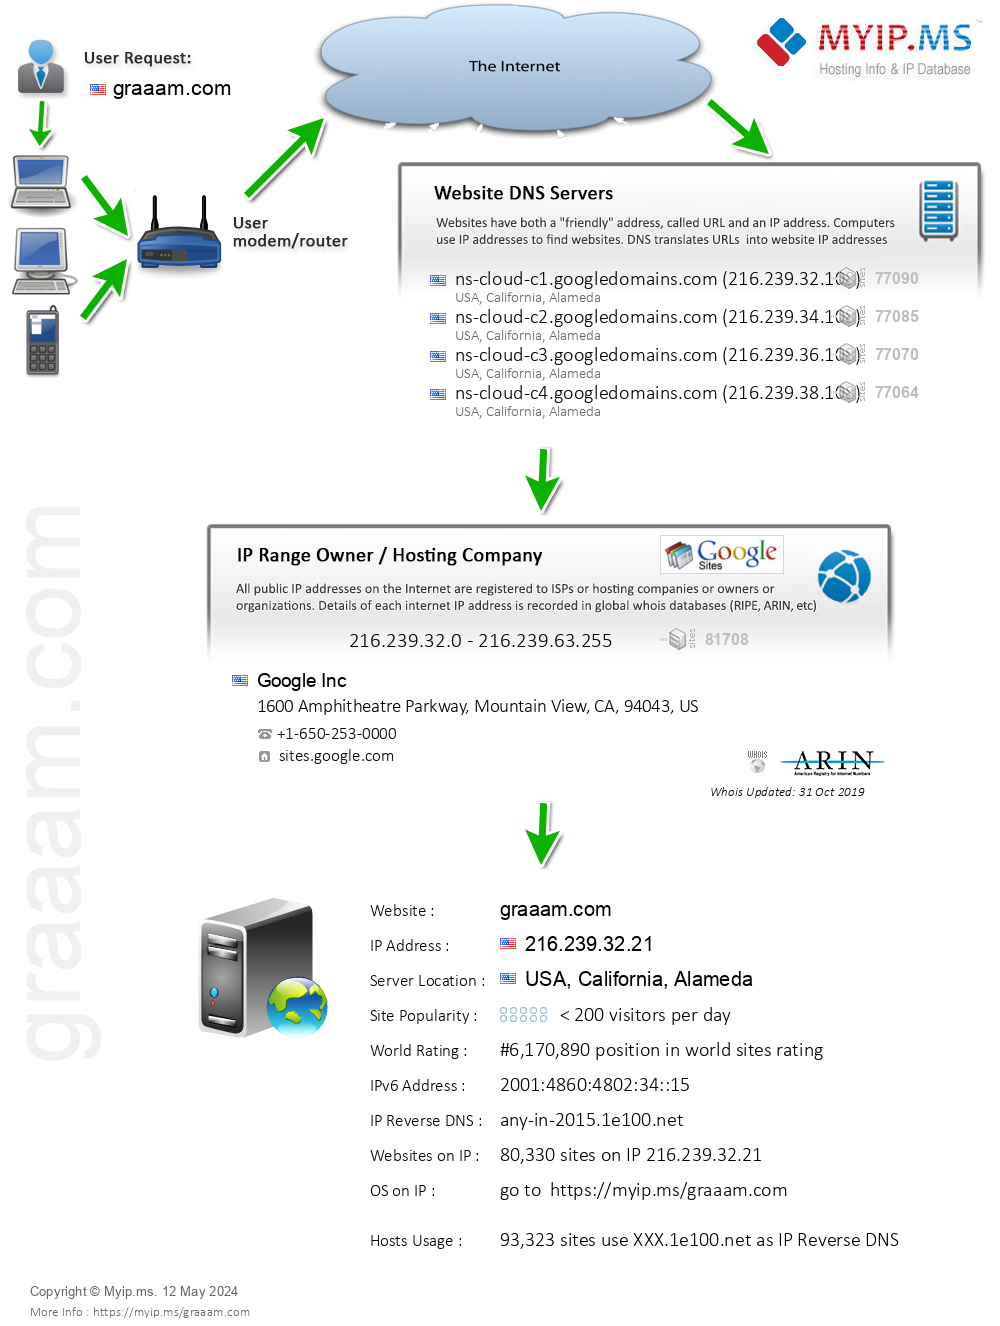 Graaam.com - Website Hosting Visual IP Diagram